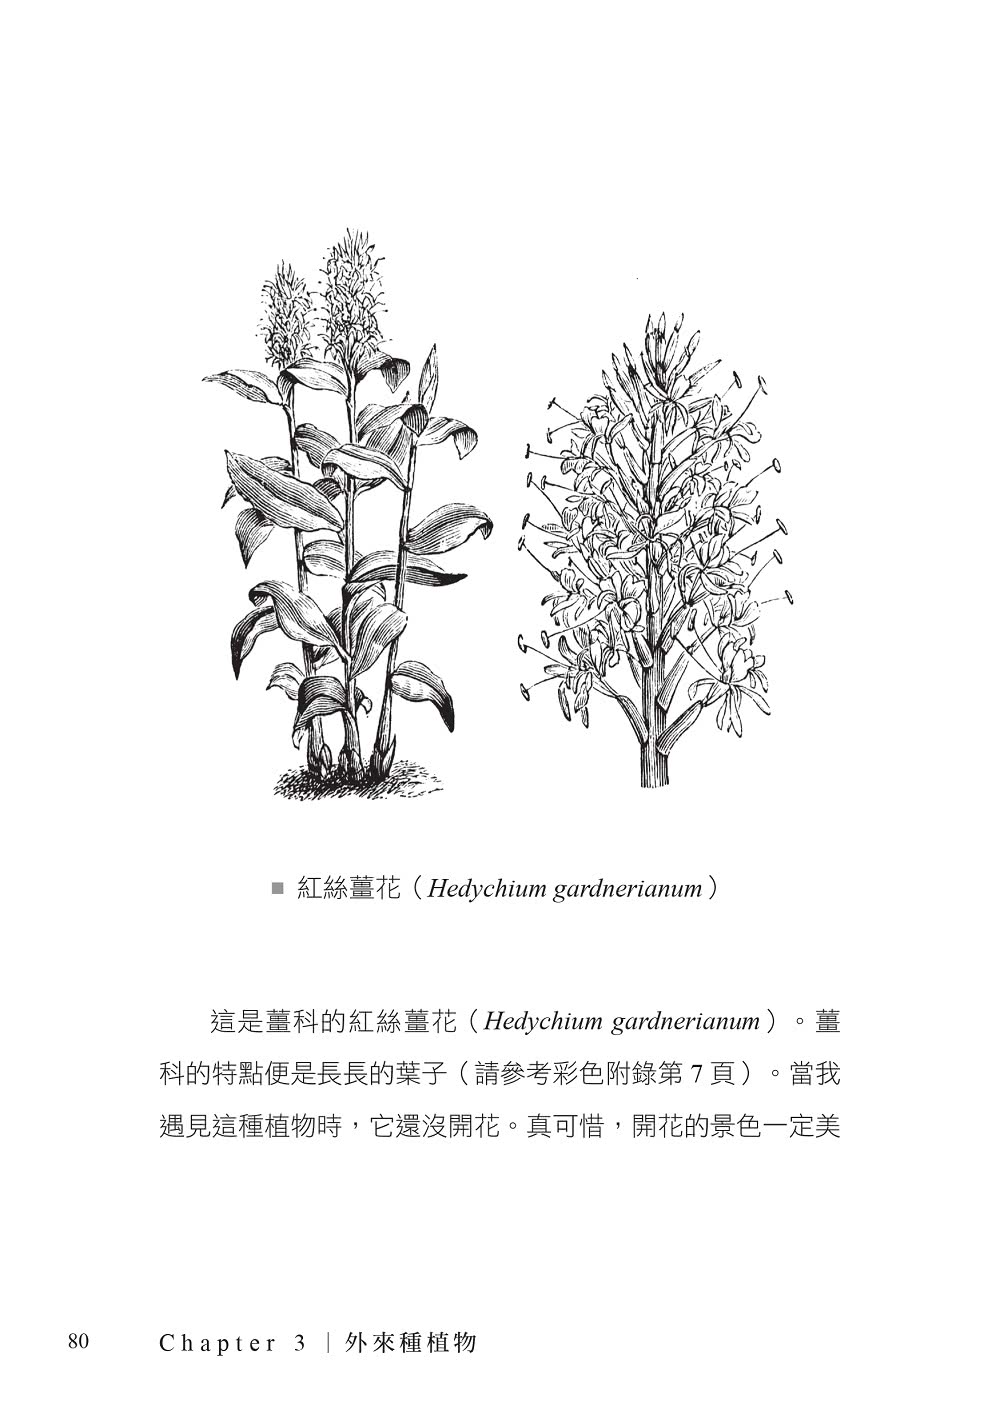 惡棍植物：關於刺痛、燃燒、致死植物的驚人故事